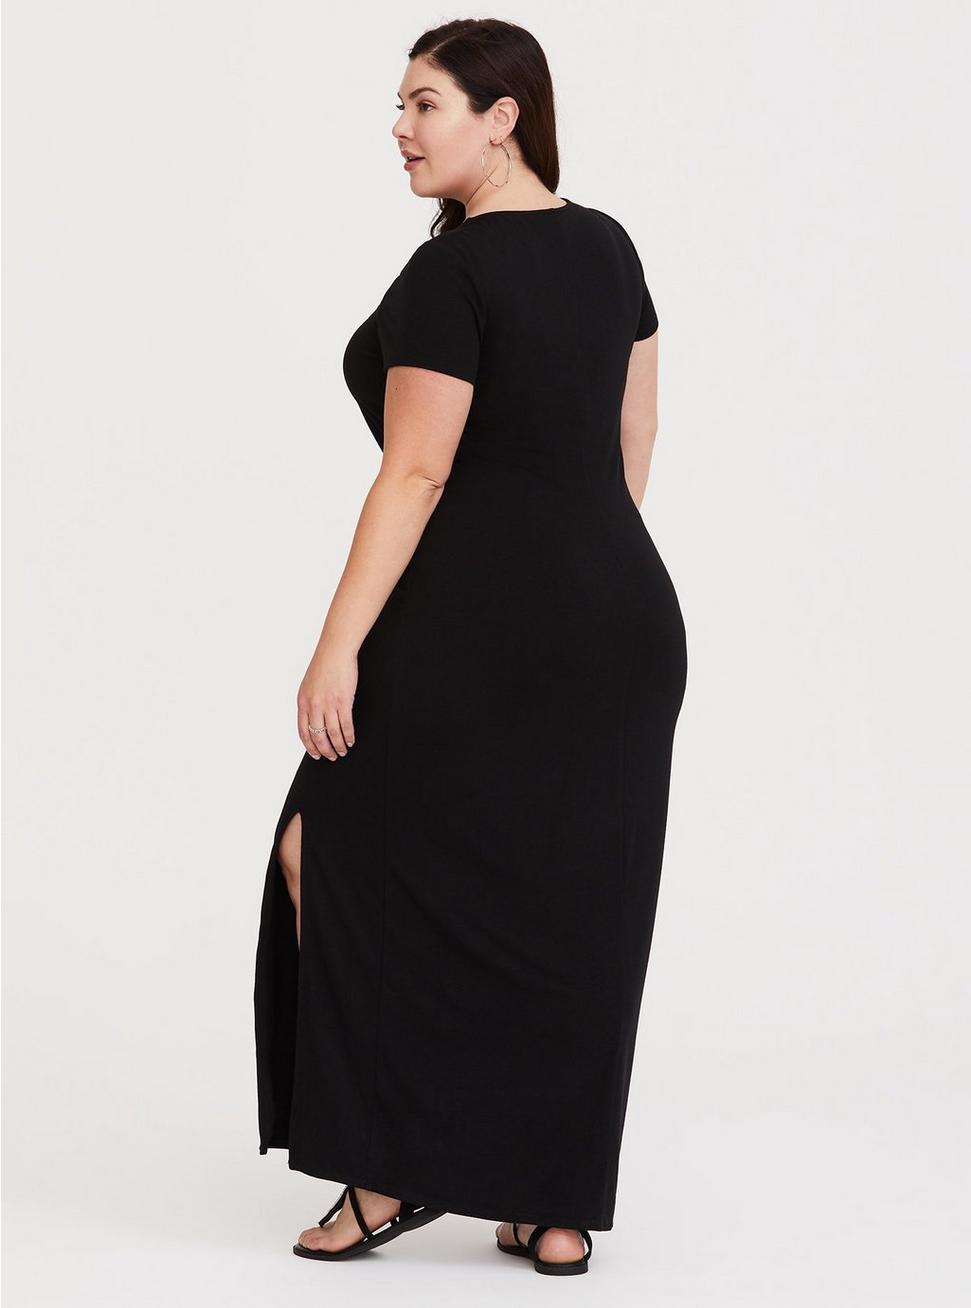 Plus Size - Black Lace-Up Jersey T-Shirt Dress - Torrid